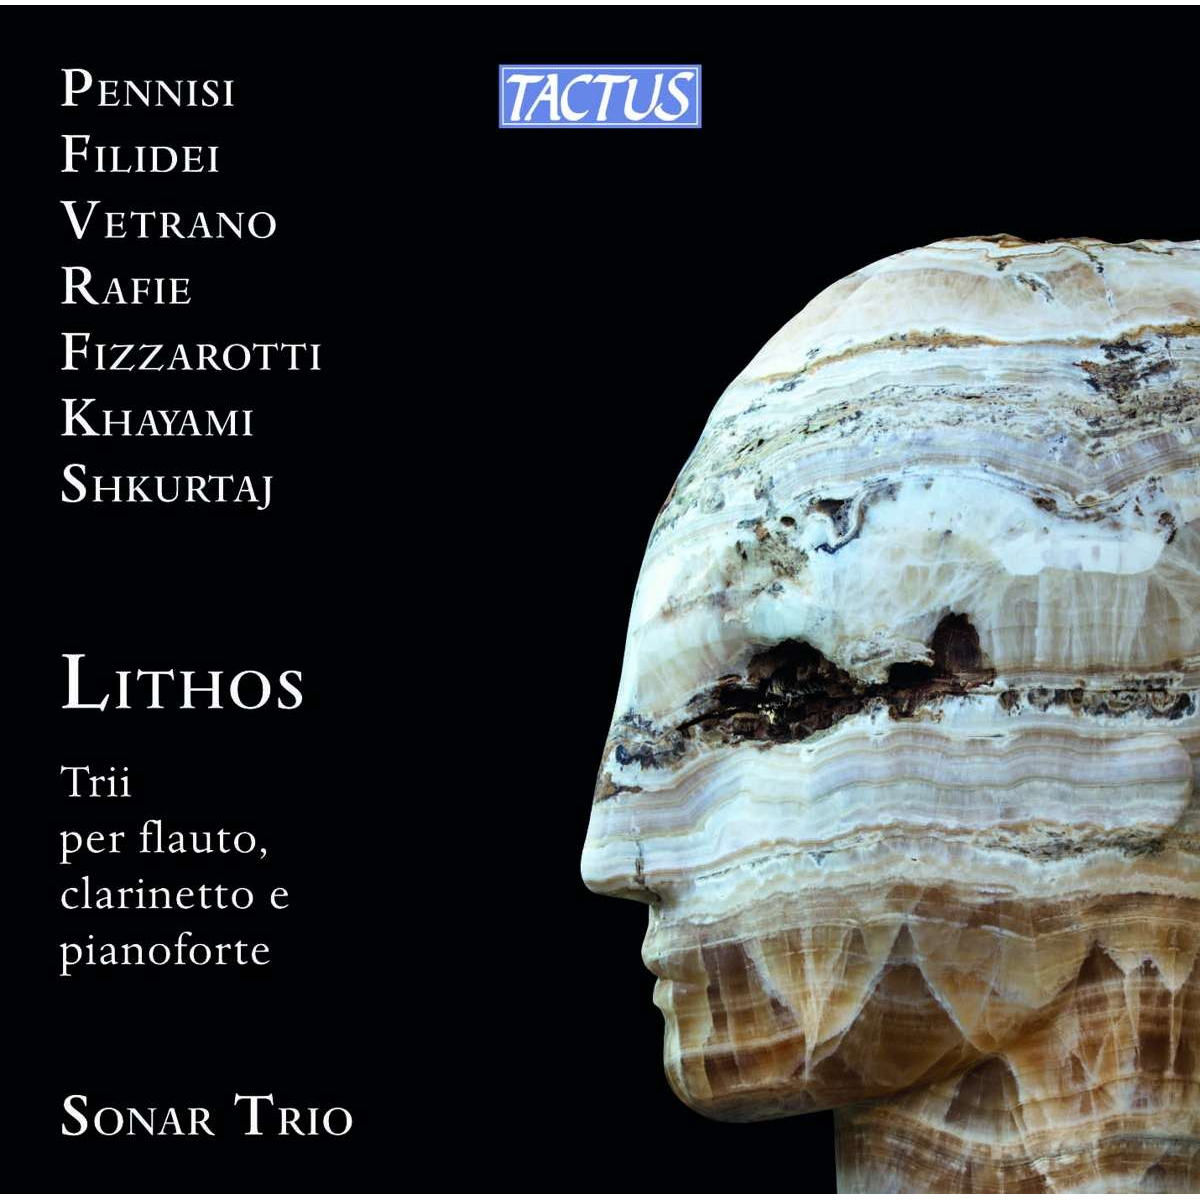 Sonar Trio - Lithos Trii Per Flauto, Clarinetto E Pianoforte - Picture 1 of 1